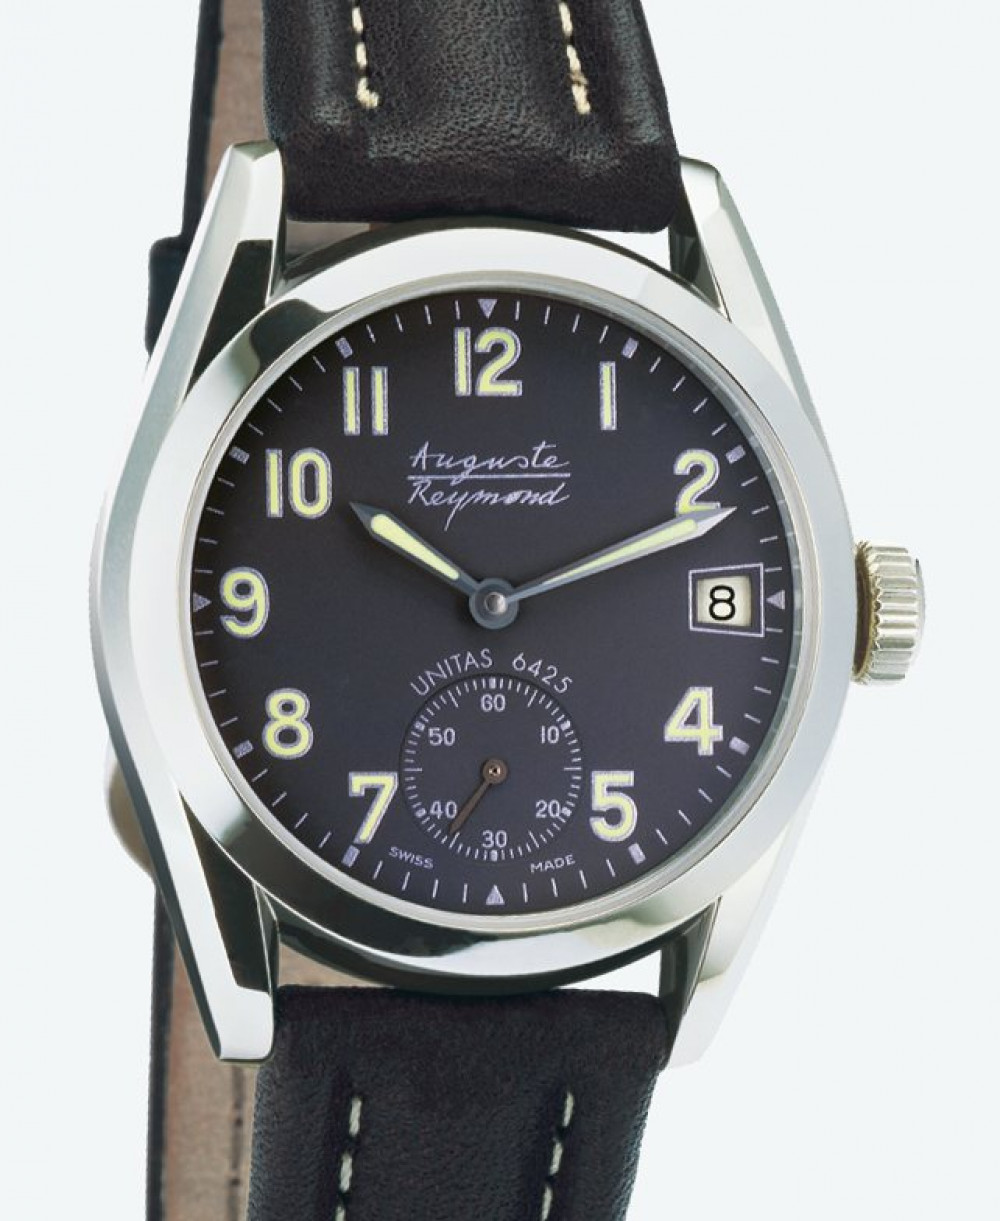 Zegarek firmy Auguste Reymond, model Boogie